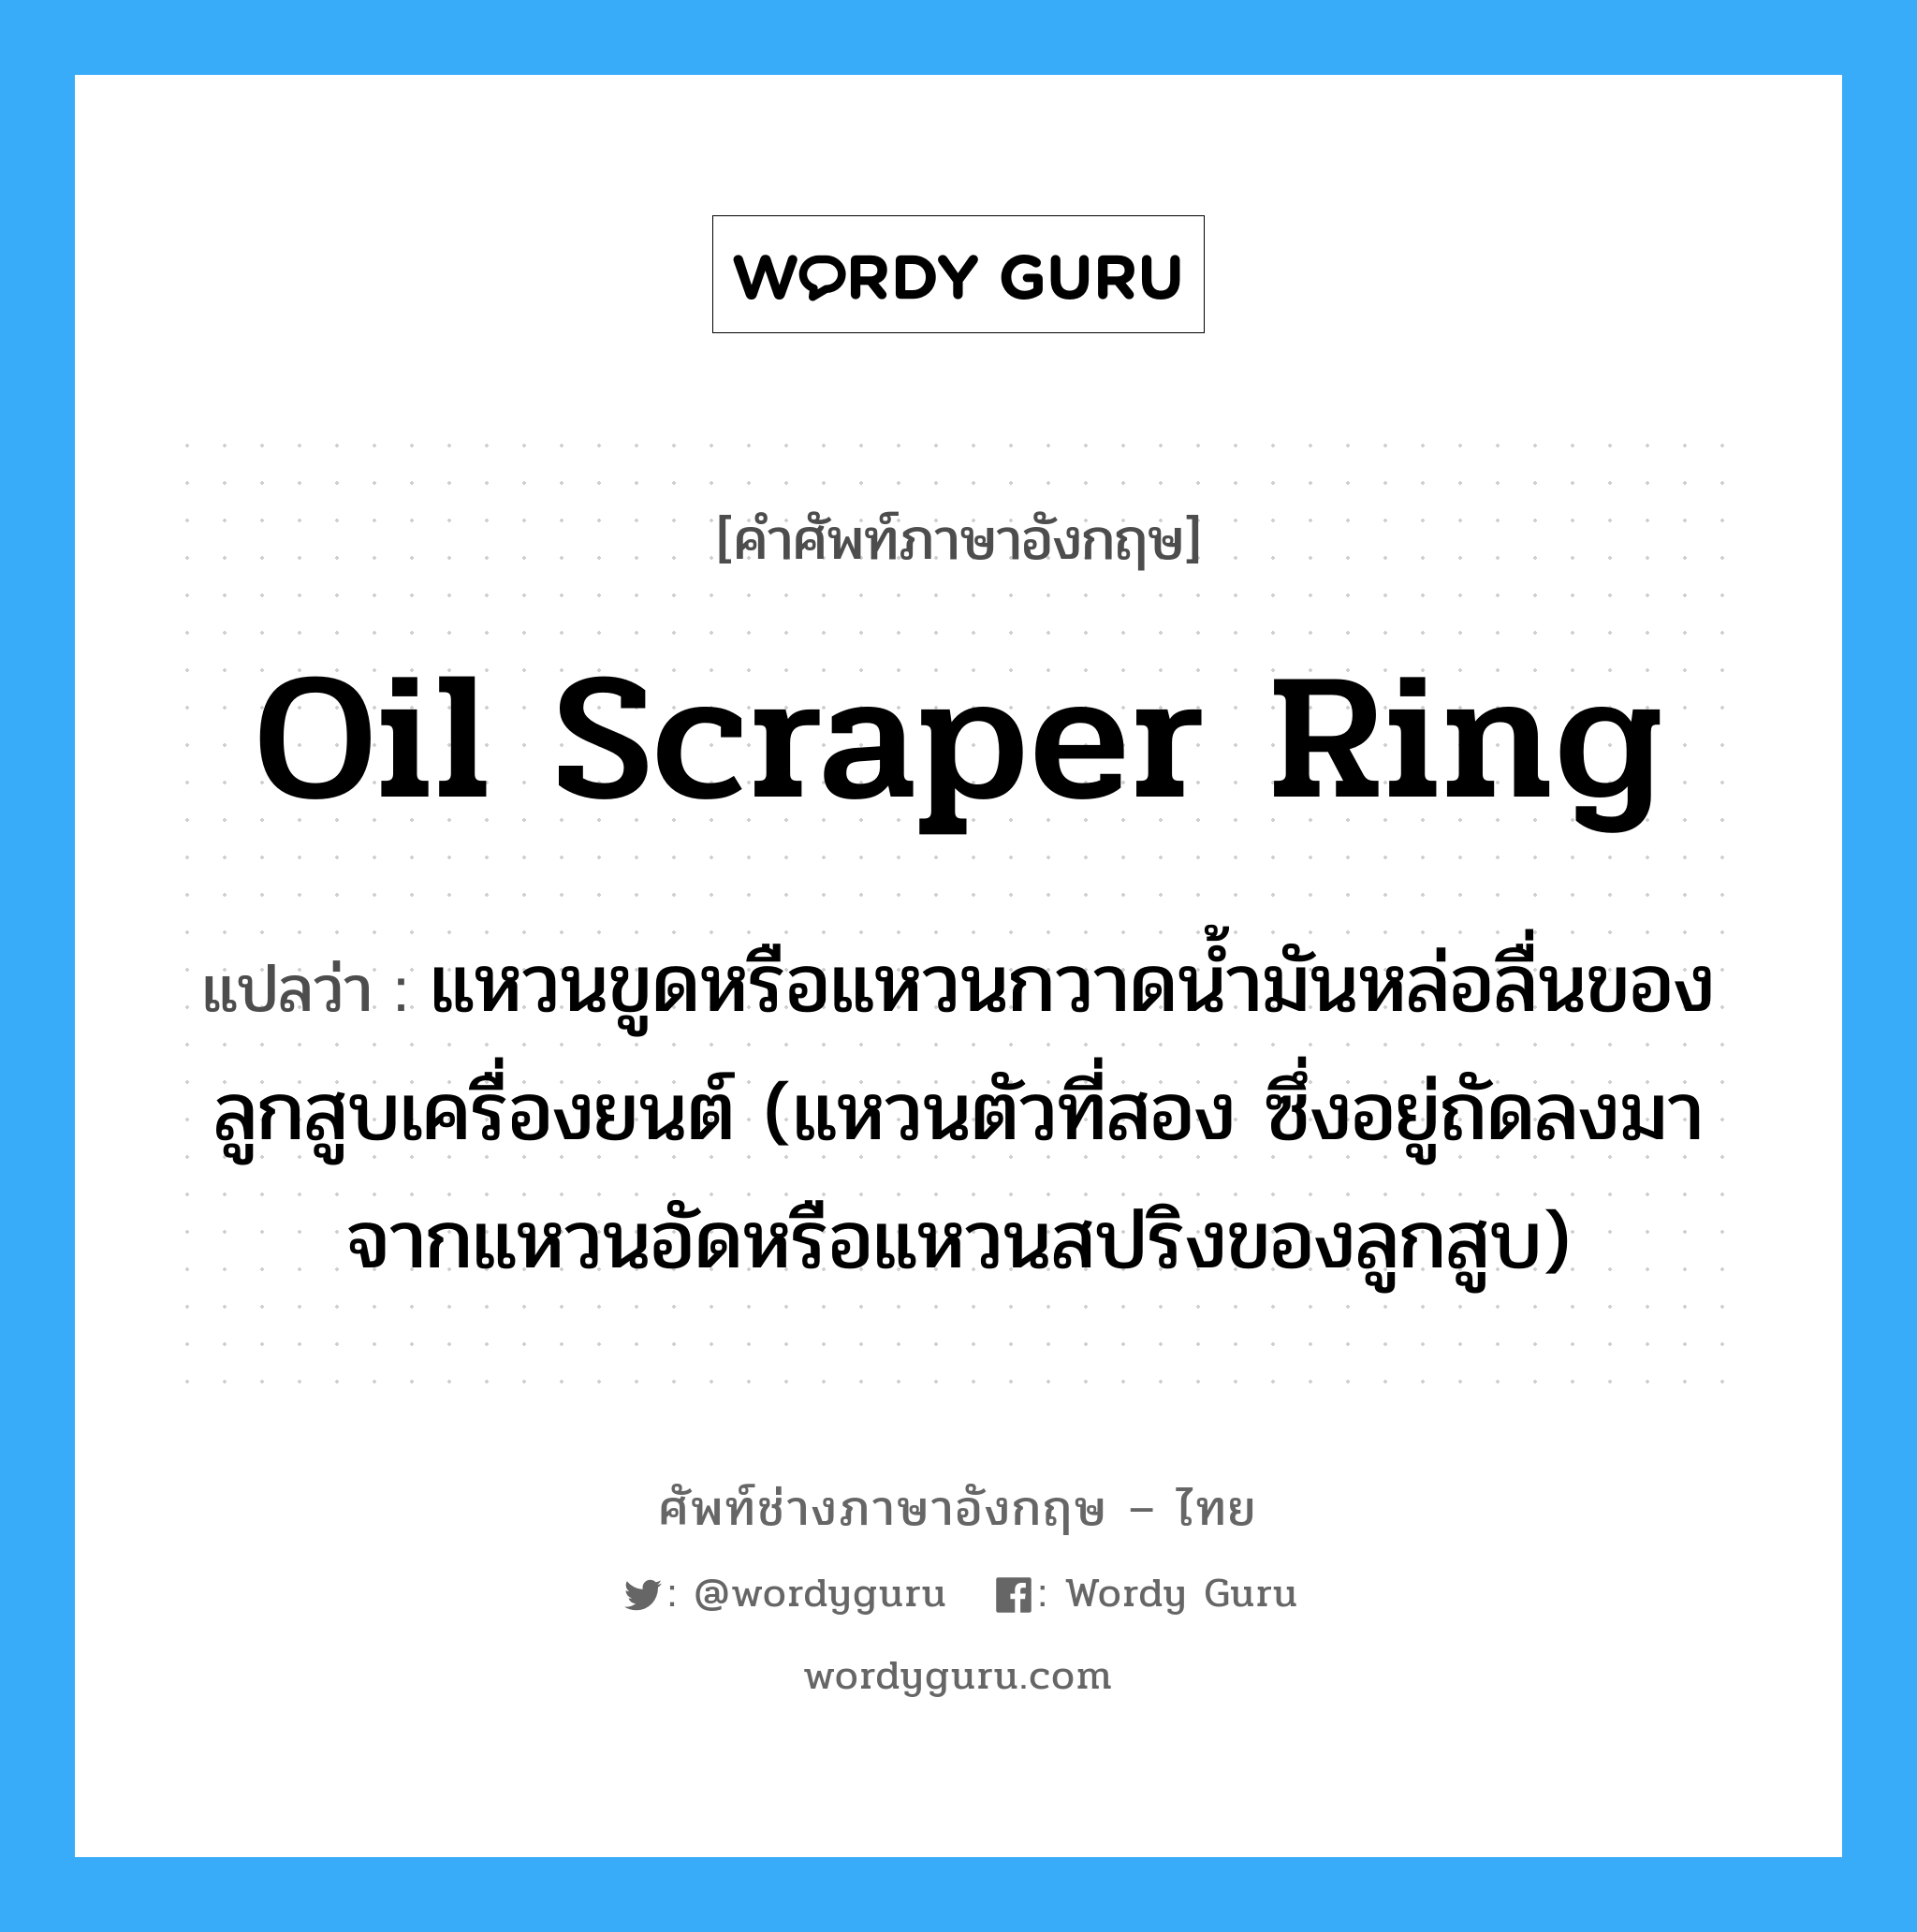 oil scraper ring แปลว่า?, คำศัพท์ช่างภาษาอังกฤษ - ไทย oil scraper ring คำศัพท์ภาษาอังกฤษ oil scraper ring แปลว่า แหวนขูดหรือแหวนกวาดน้ำมันหล่อลื่นของลูกสูบเครื่องยนต์ (แหวนตัวที่สอง ซึ่งอยู่ถัดลงมาจากแหวนอัดหรือแหวนสปริงของลูกสูบ)